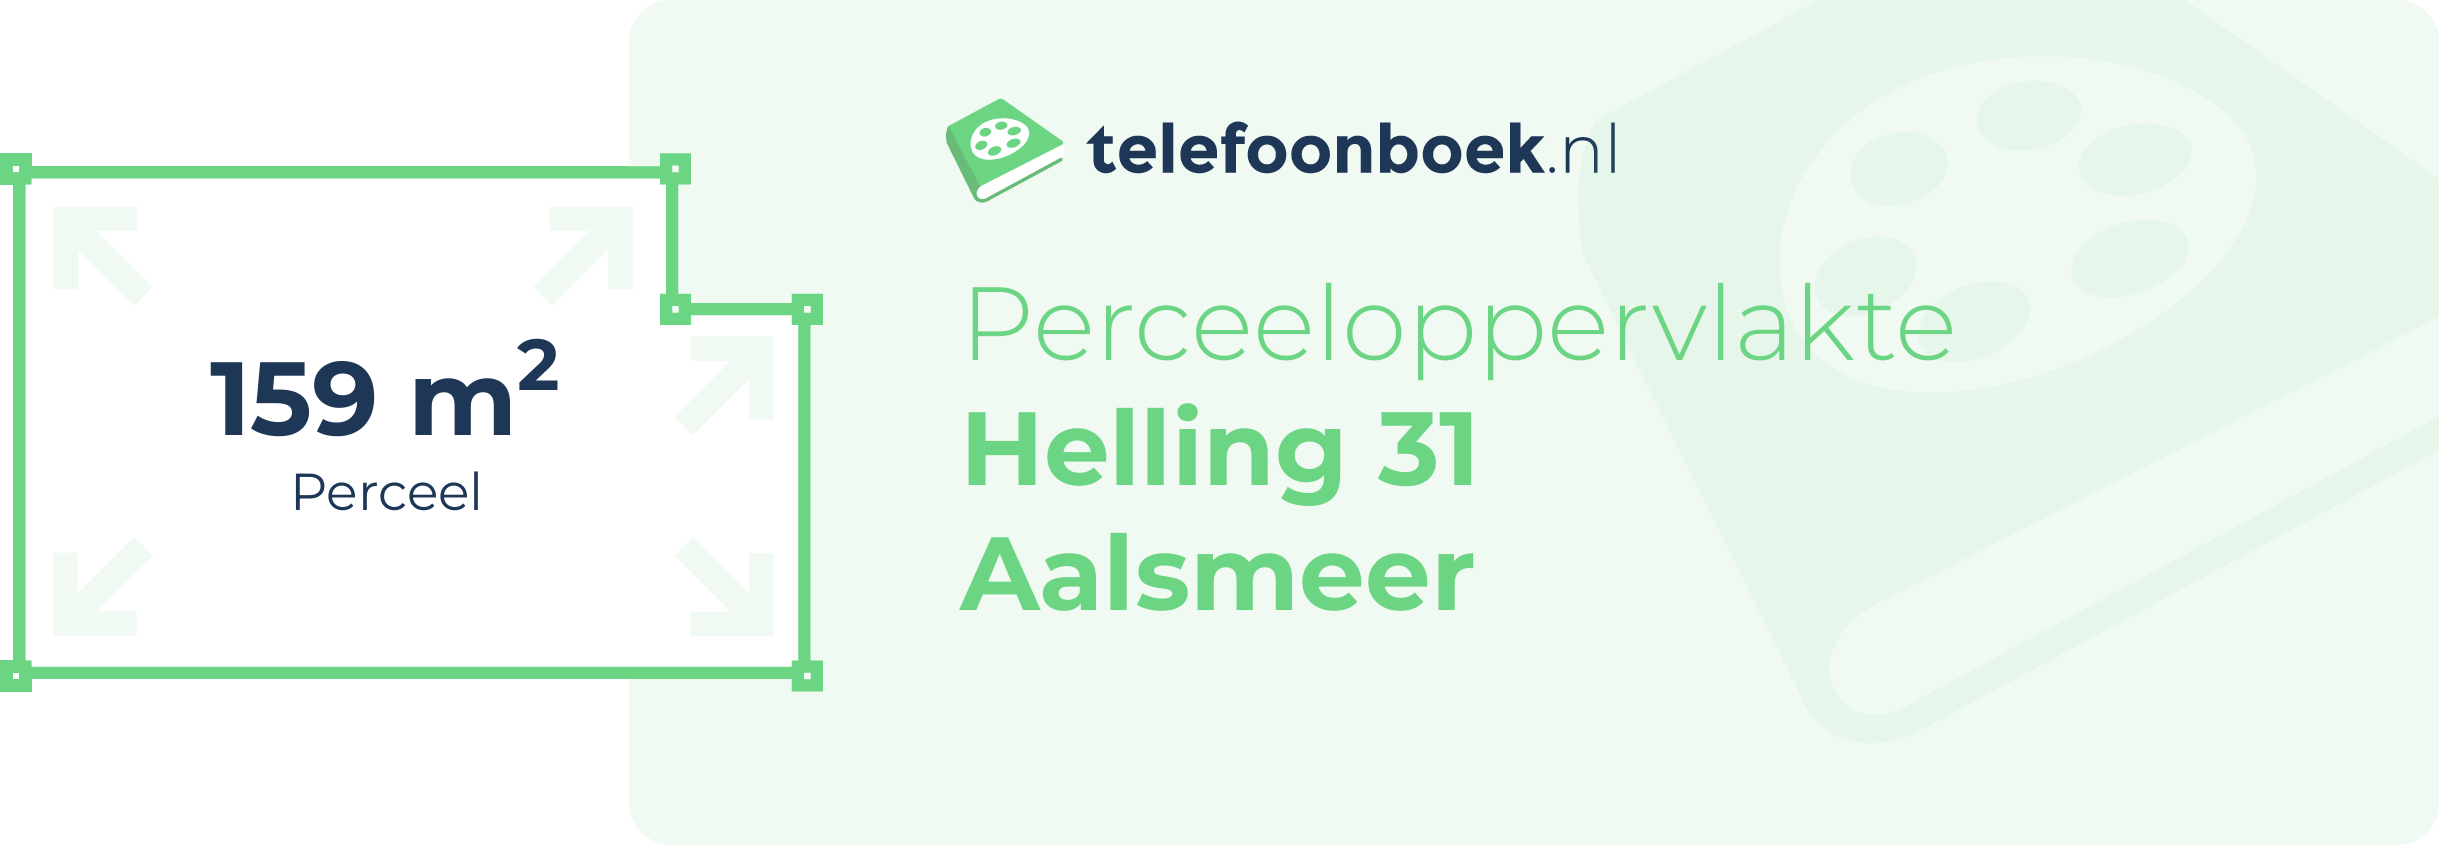 Perceeloppervlakte Helling 31 Aalsmeer